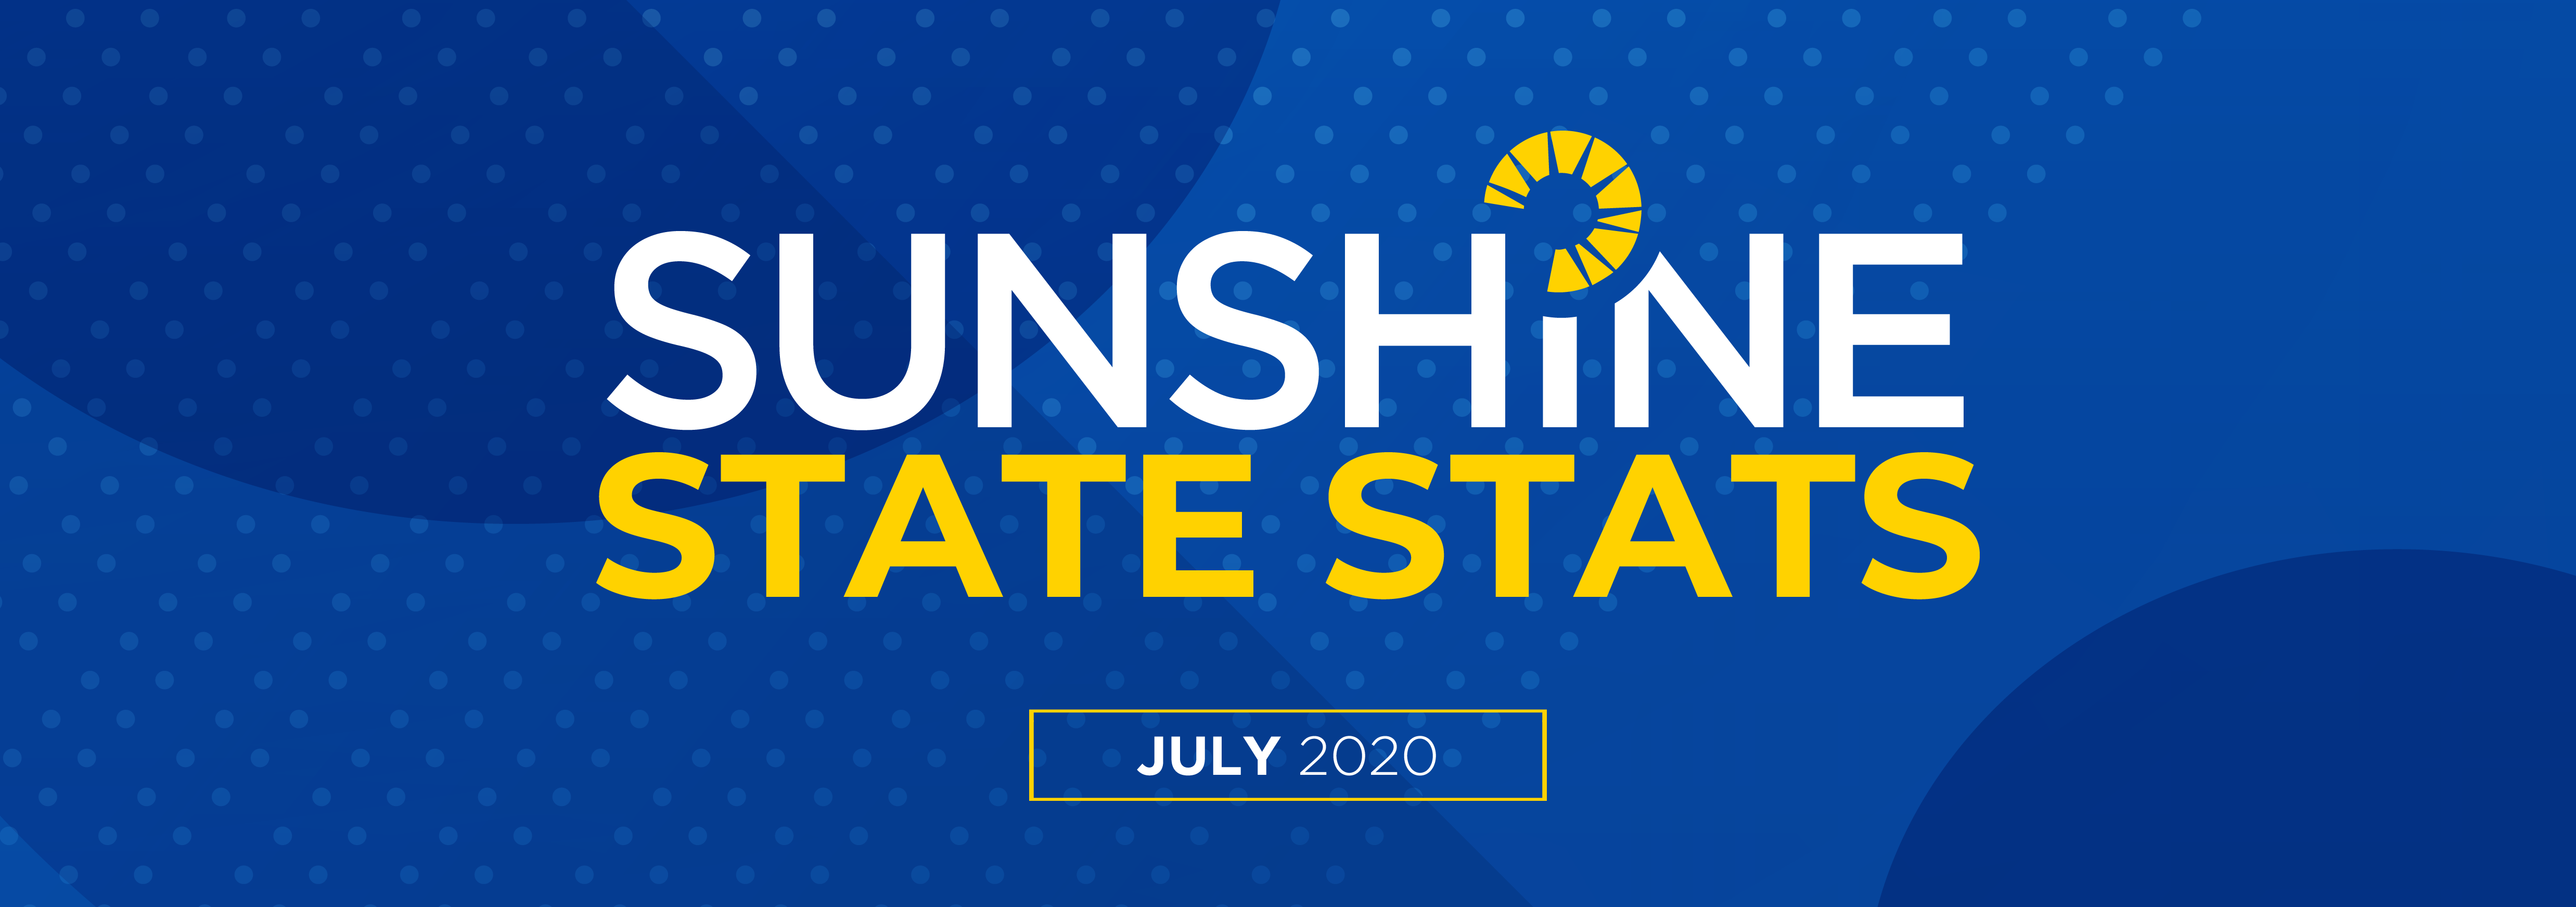 Sunshine State Stats July 2020